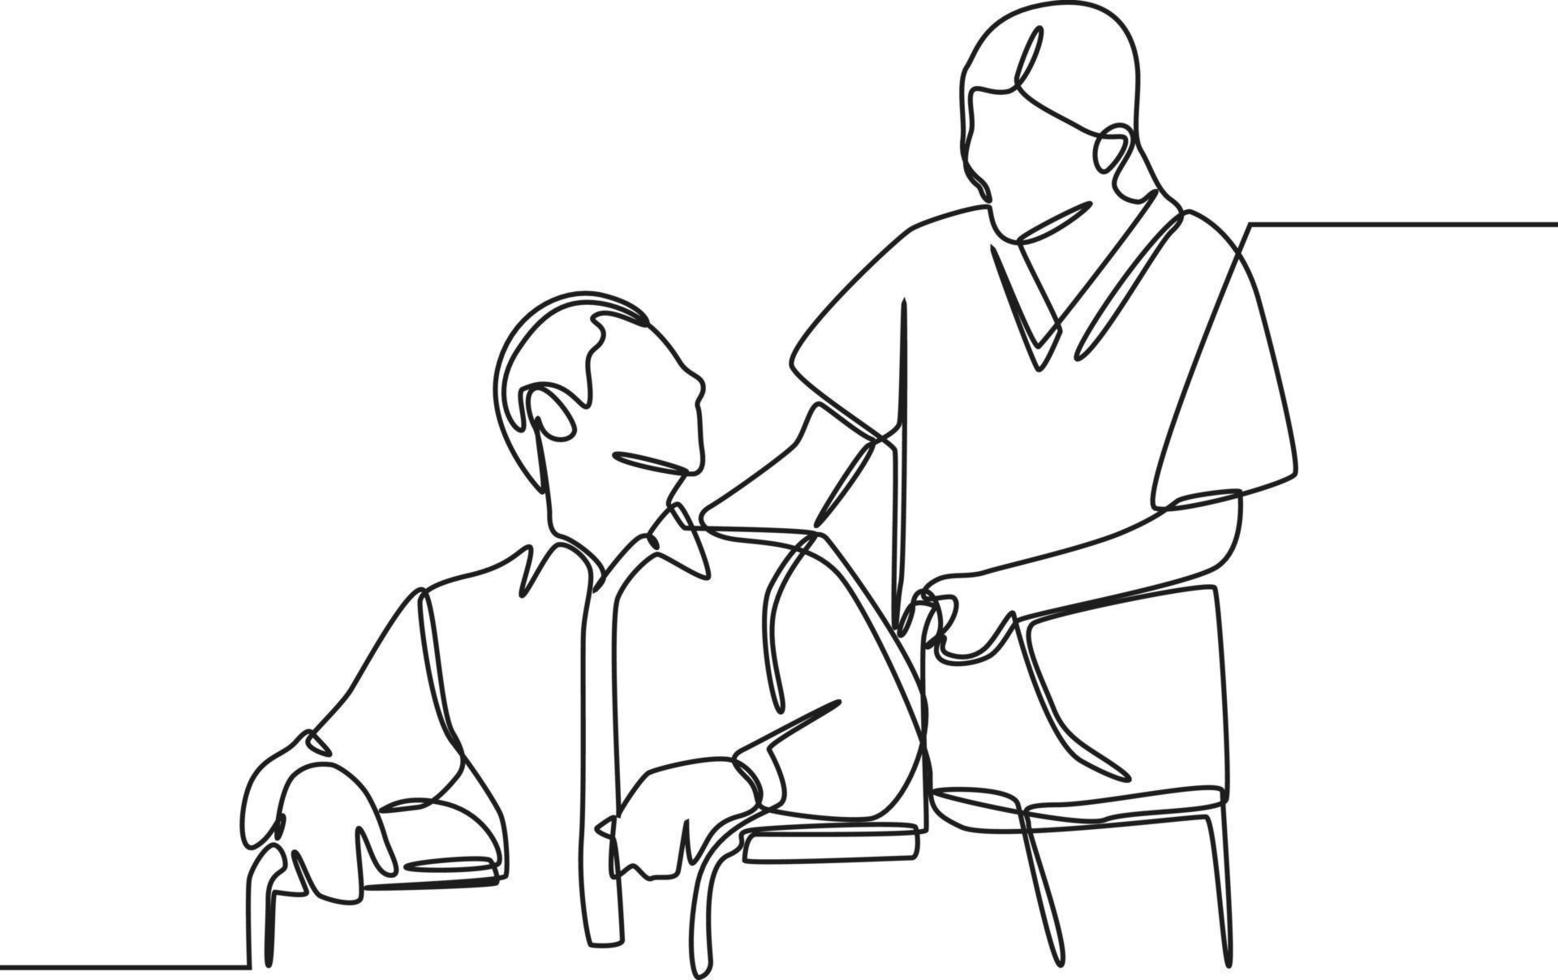 kontinuerlig en rad ritning sjuksköterska tar hand om mogen manlig patient sitter på rullstol på sjukhus. internationella sjuksköterskedagen. enda rad rita design vektorgrafisk illustration. vektor